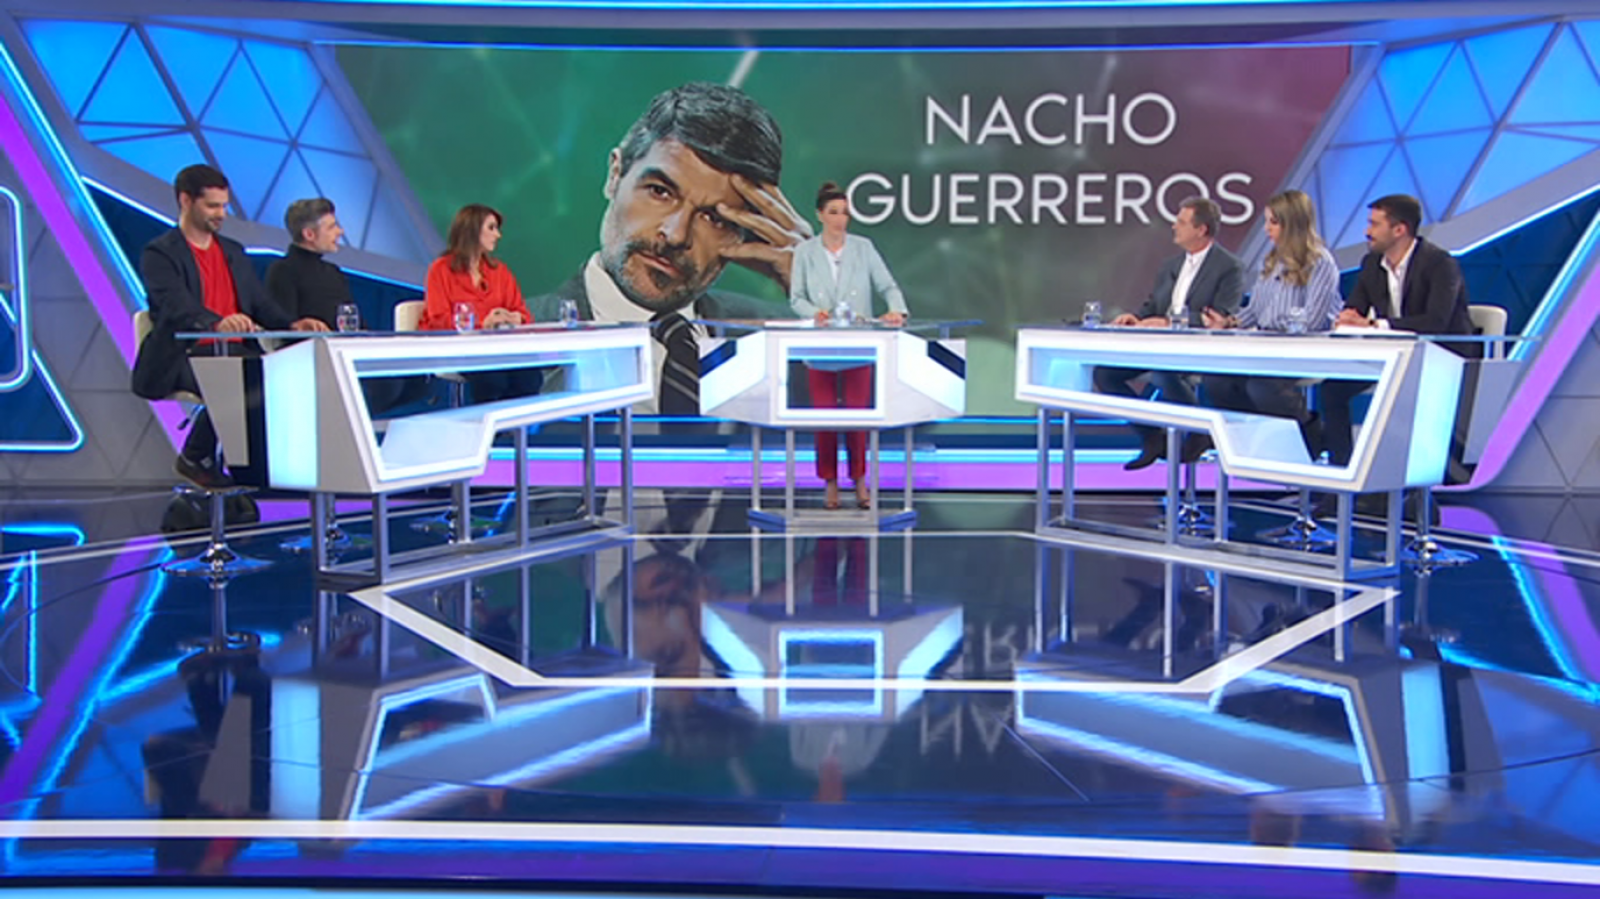 Lo siguiente - Nacho Guerreros - 25/03/19